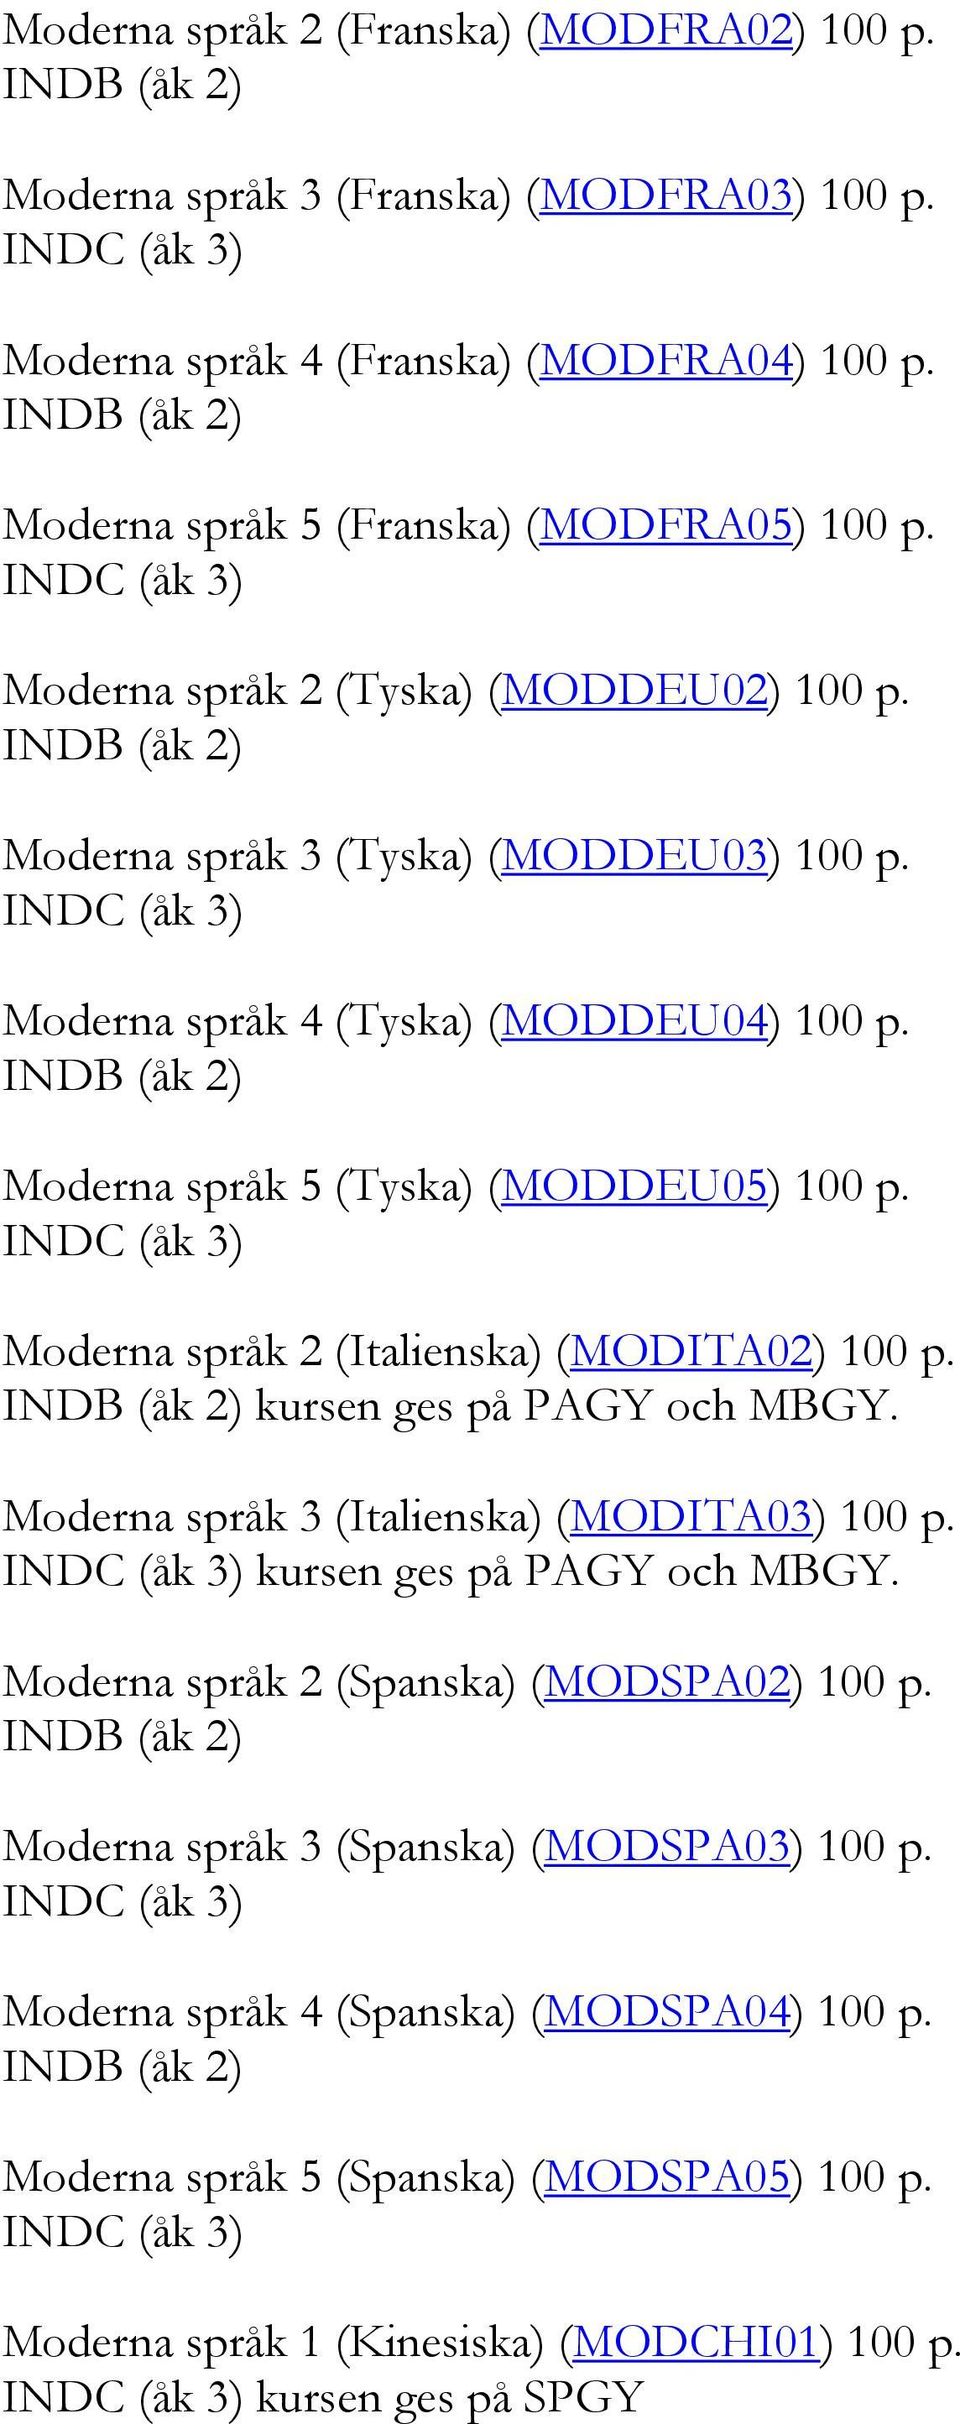 Moderna språk 2 (Italienska) (MODITA02) 100 p. kursen ges på PAGY och MBGY. Moderna språk 3 (Italienska) (MODITA03) 100 p. kursen ges på PAGY och MBGY. Moderna språk 2 (Spanska) (MODSPA02) 100 p.